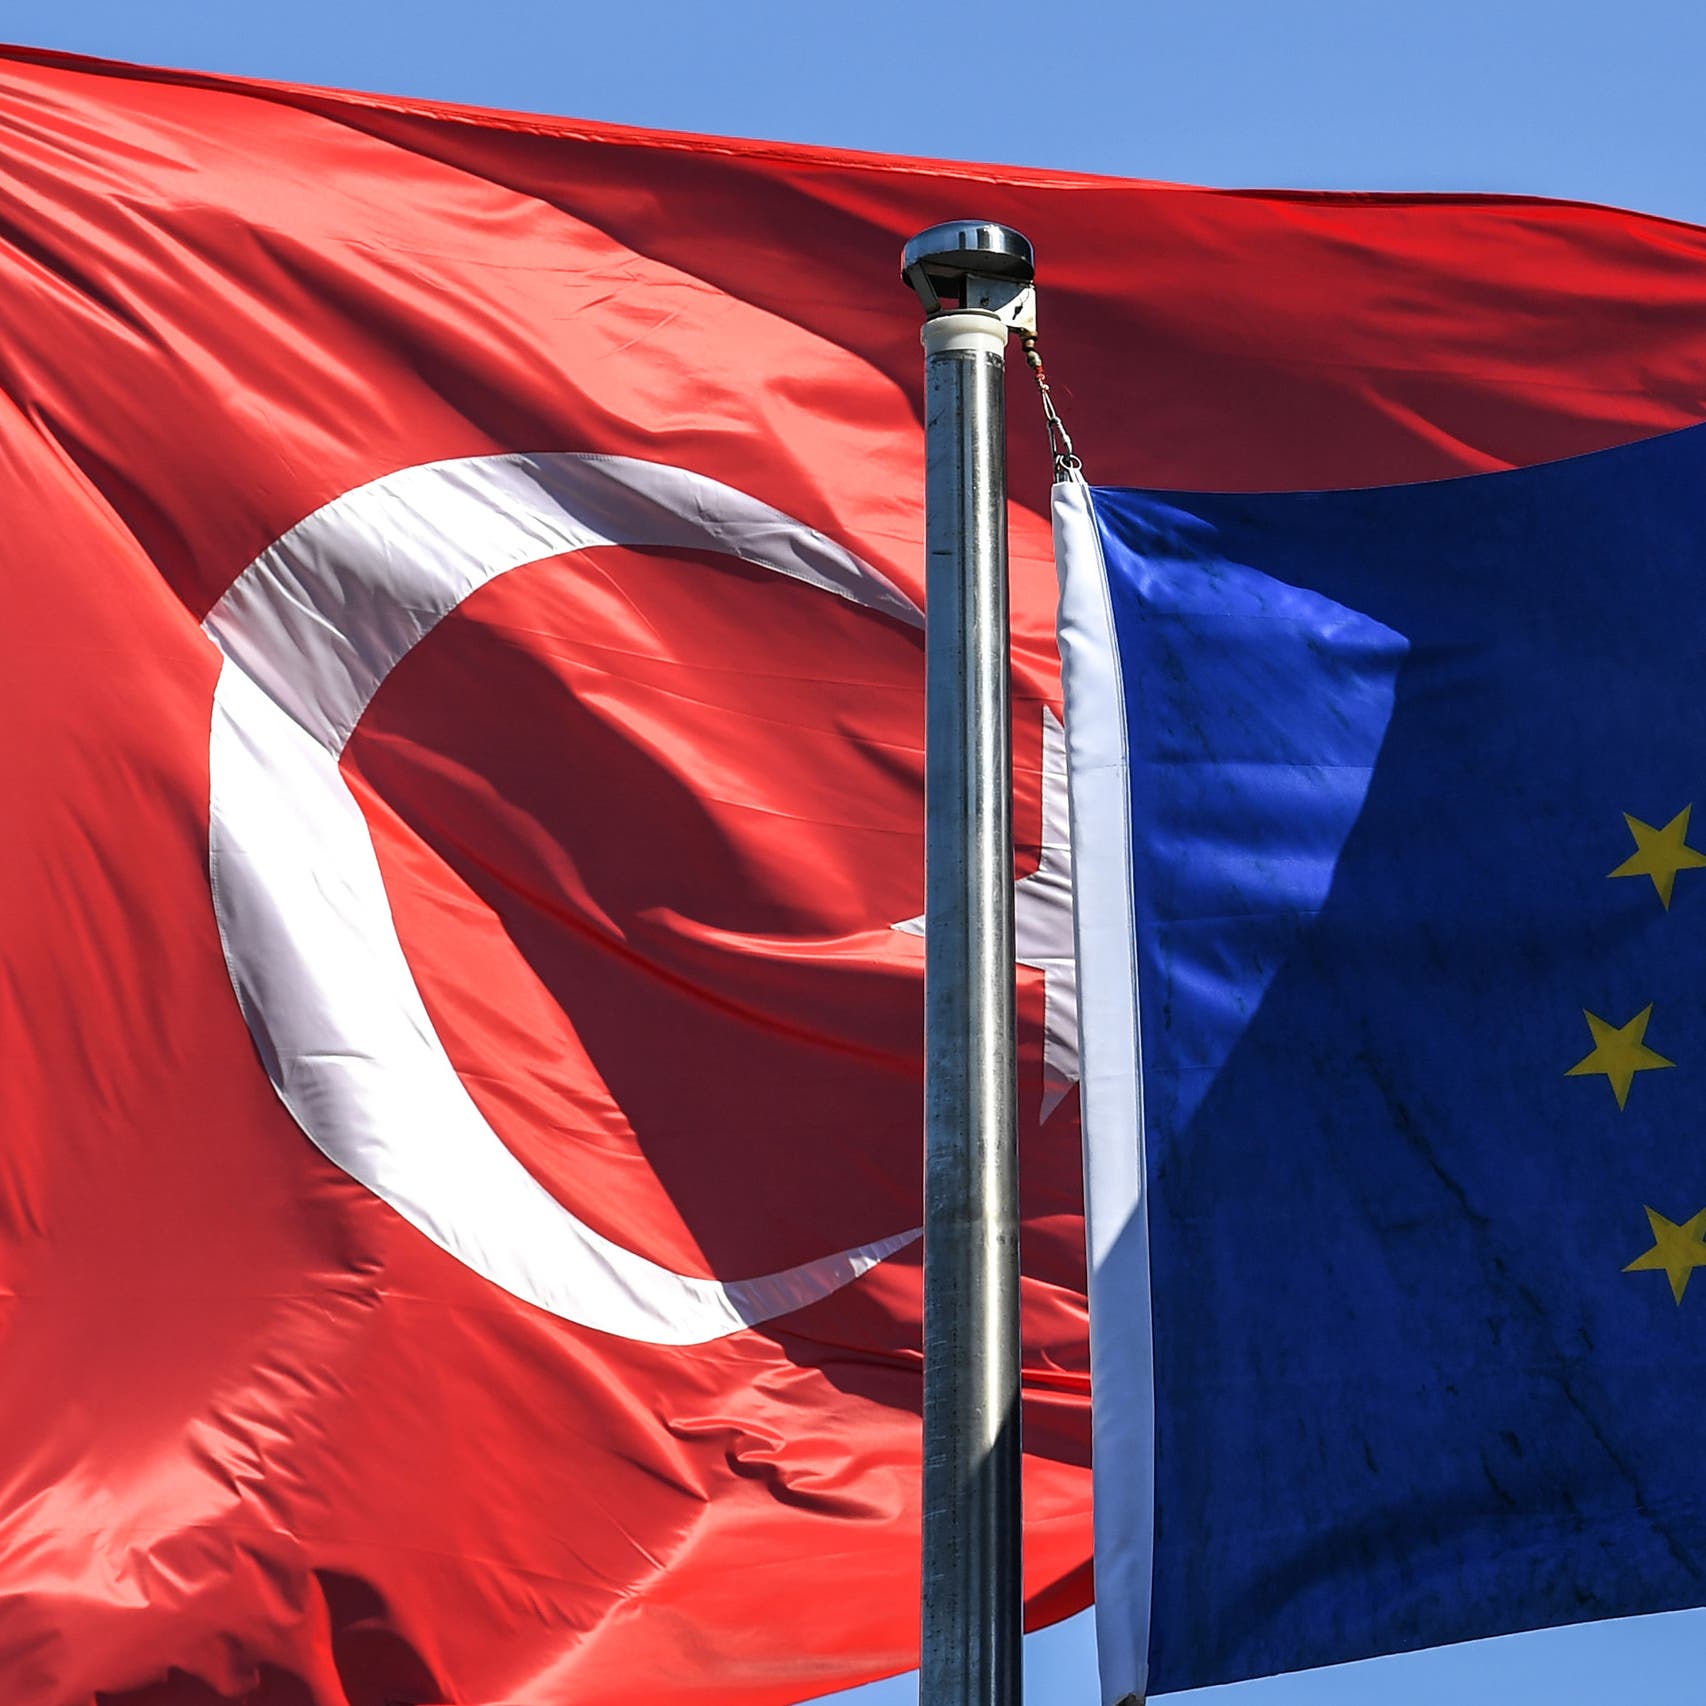 "استفزاز غير مقبول".. الاتحاد الأوروبي يدين خطاب أنقرة